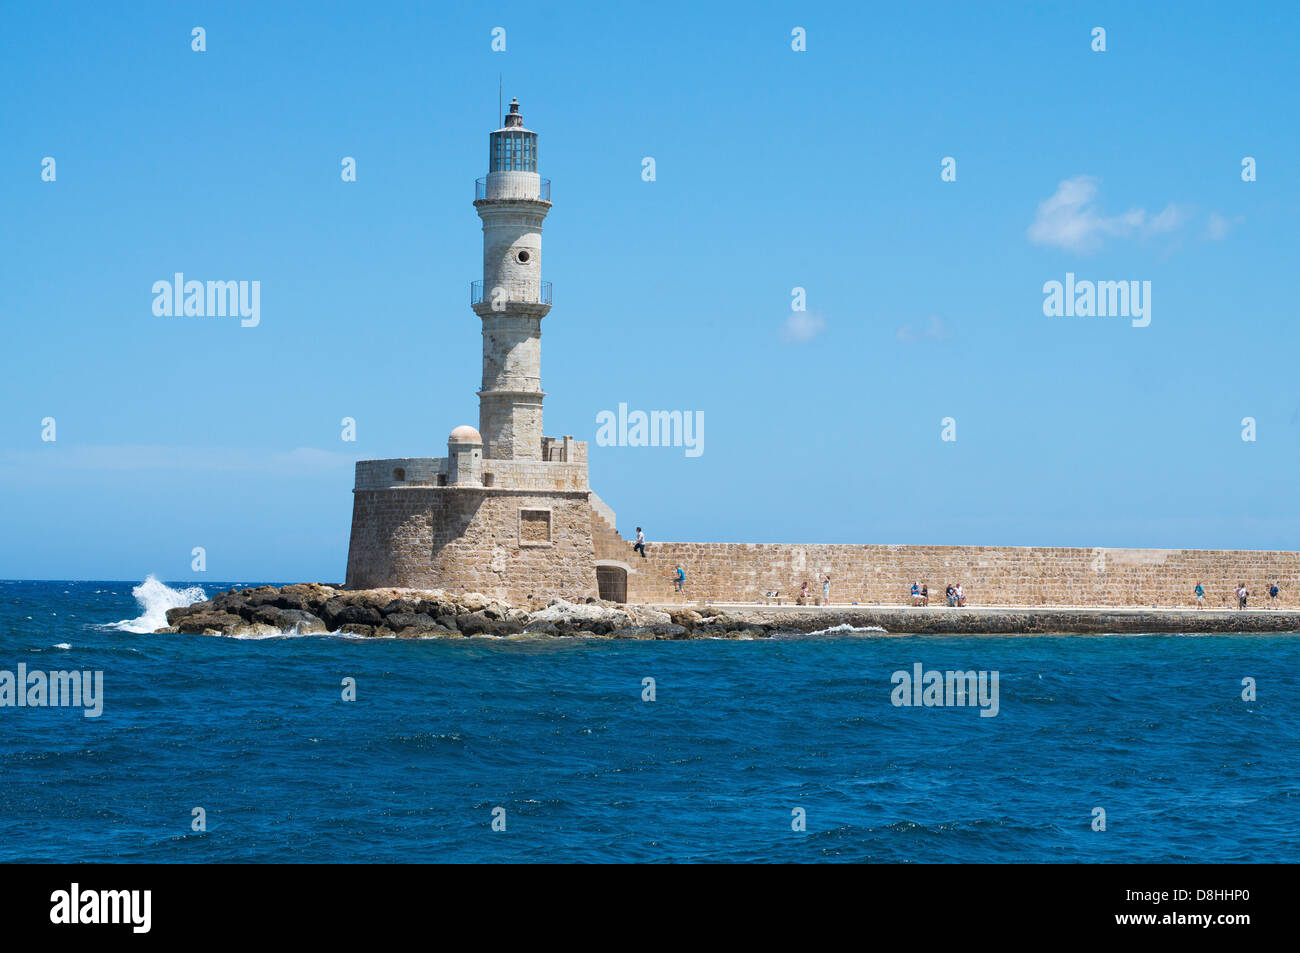 Vieux phare sur la jetée dans le port de La Canée, Crète, Grèce Banque D'Images